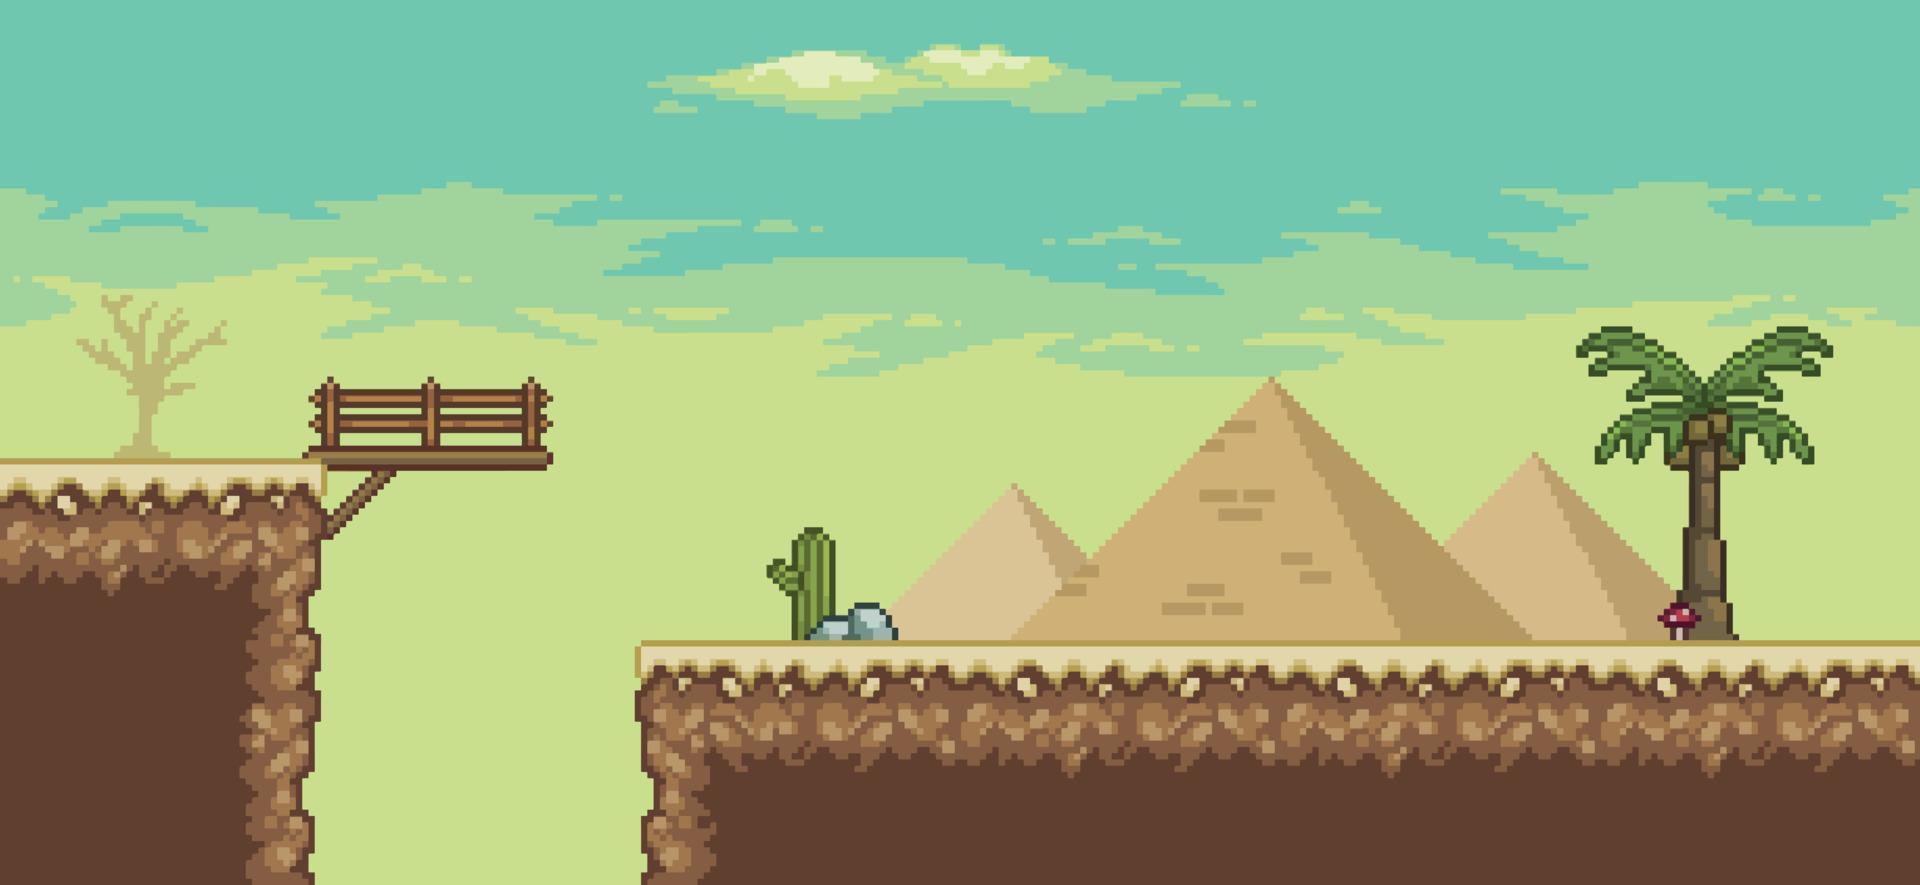 cena do jogo do deserto de pixel art com, pirâmide, ponte, palmeira, cactos, placa de direção fundo de 8 bits vetor